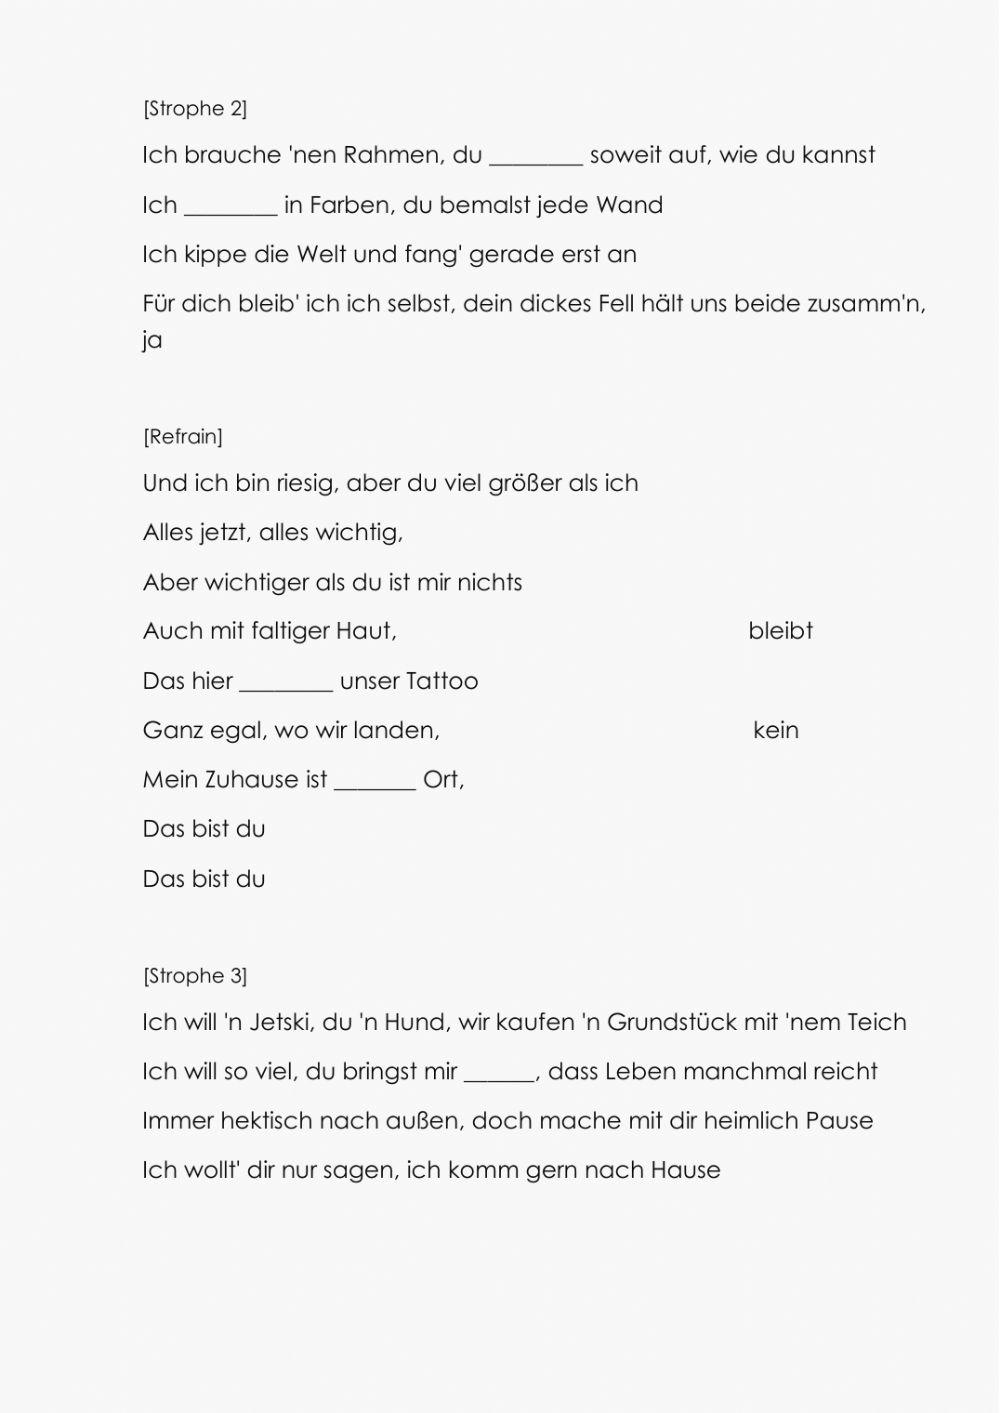 Die Deutsche Grammatik